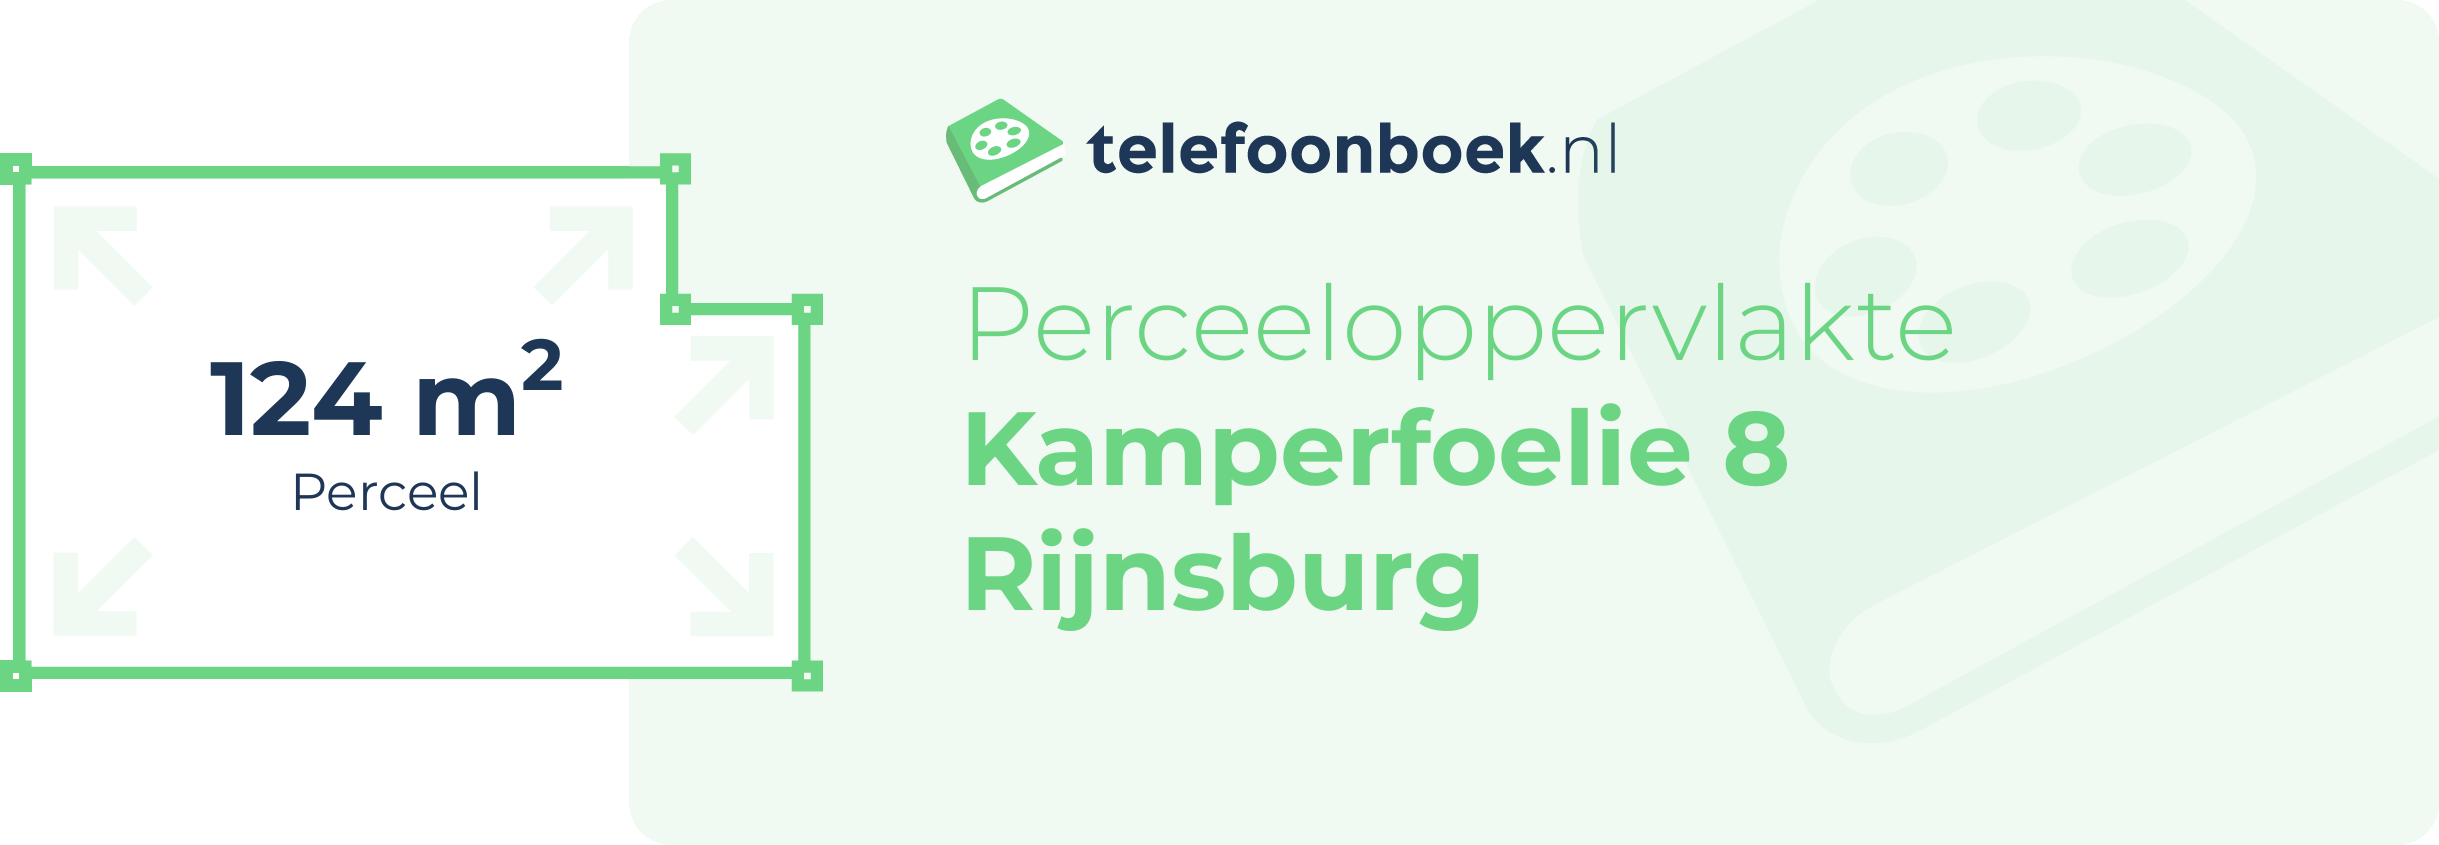 Perceeloppervlakte Kamperfoelie 8 Rijnsburg